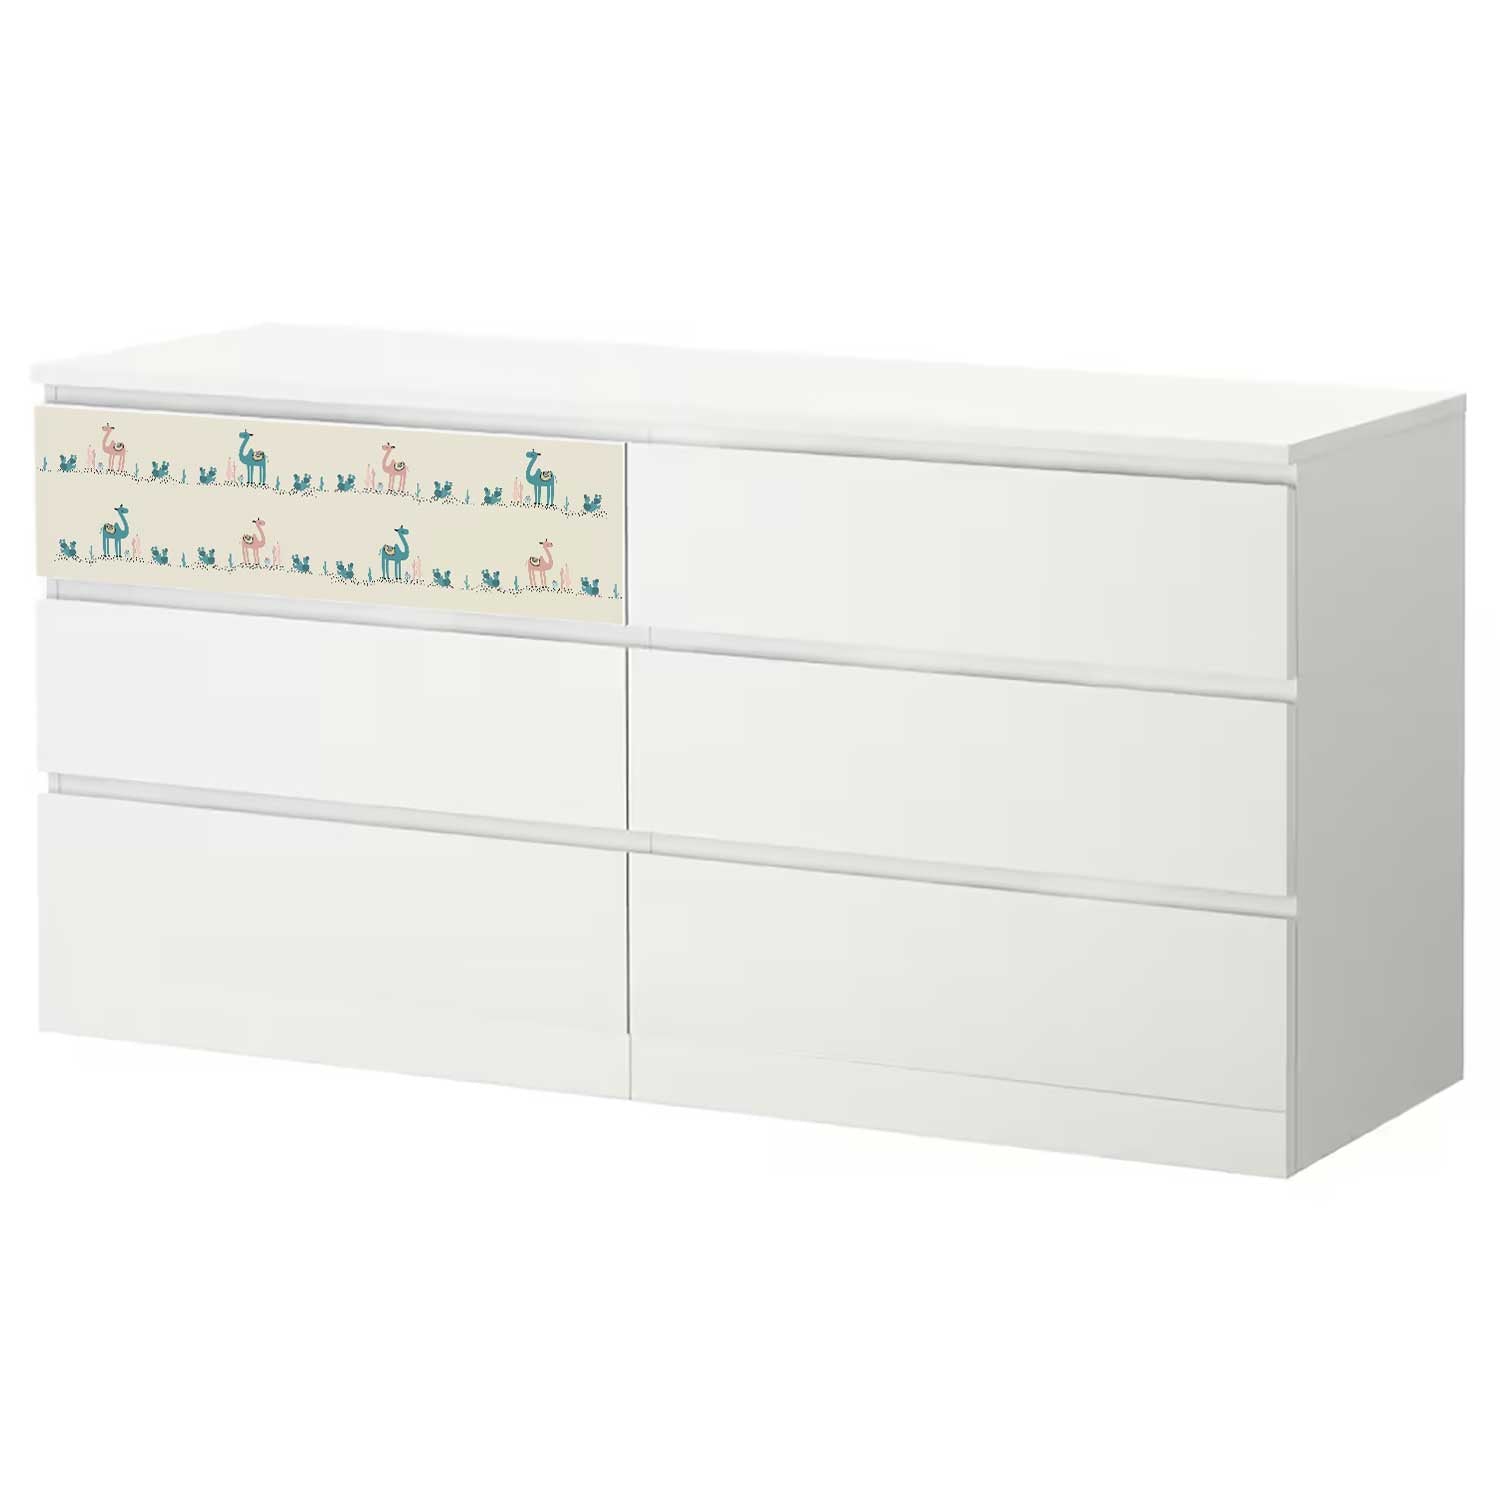 Möbelfolie Kinder für IKEA MALM Kommode 6-Schubladen 160x78 cm 'Kamele'